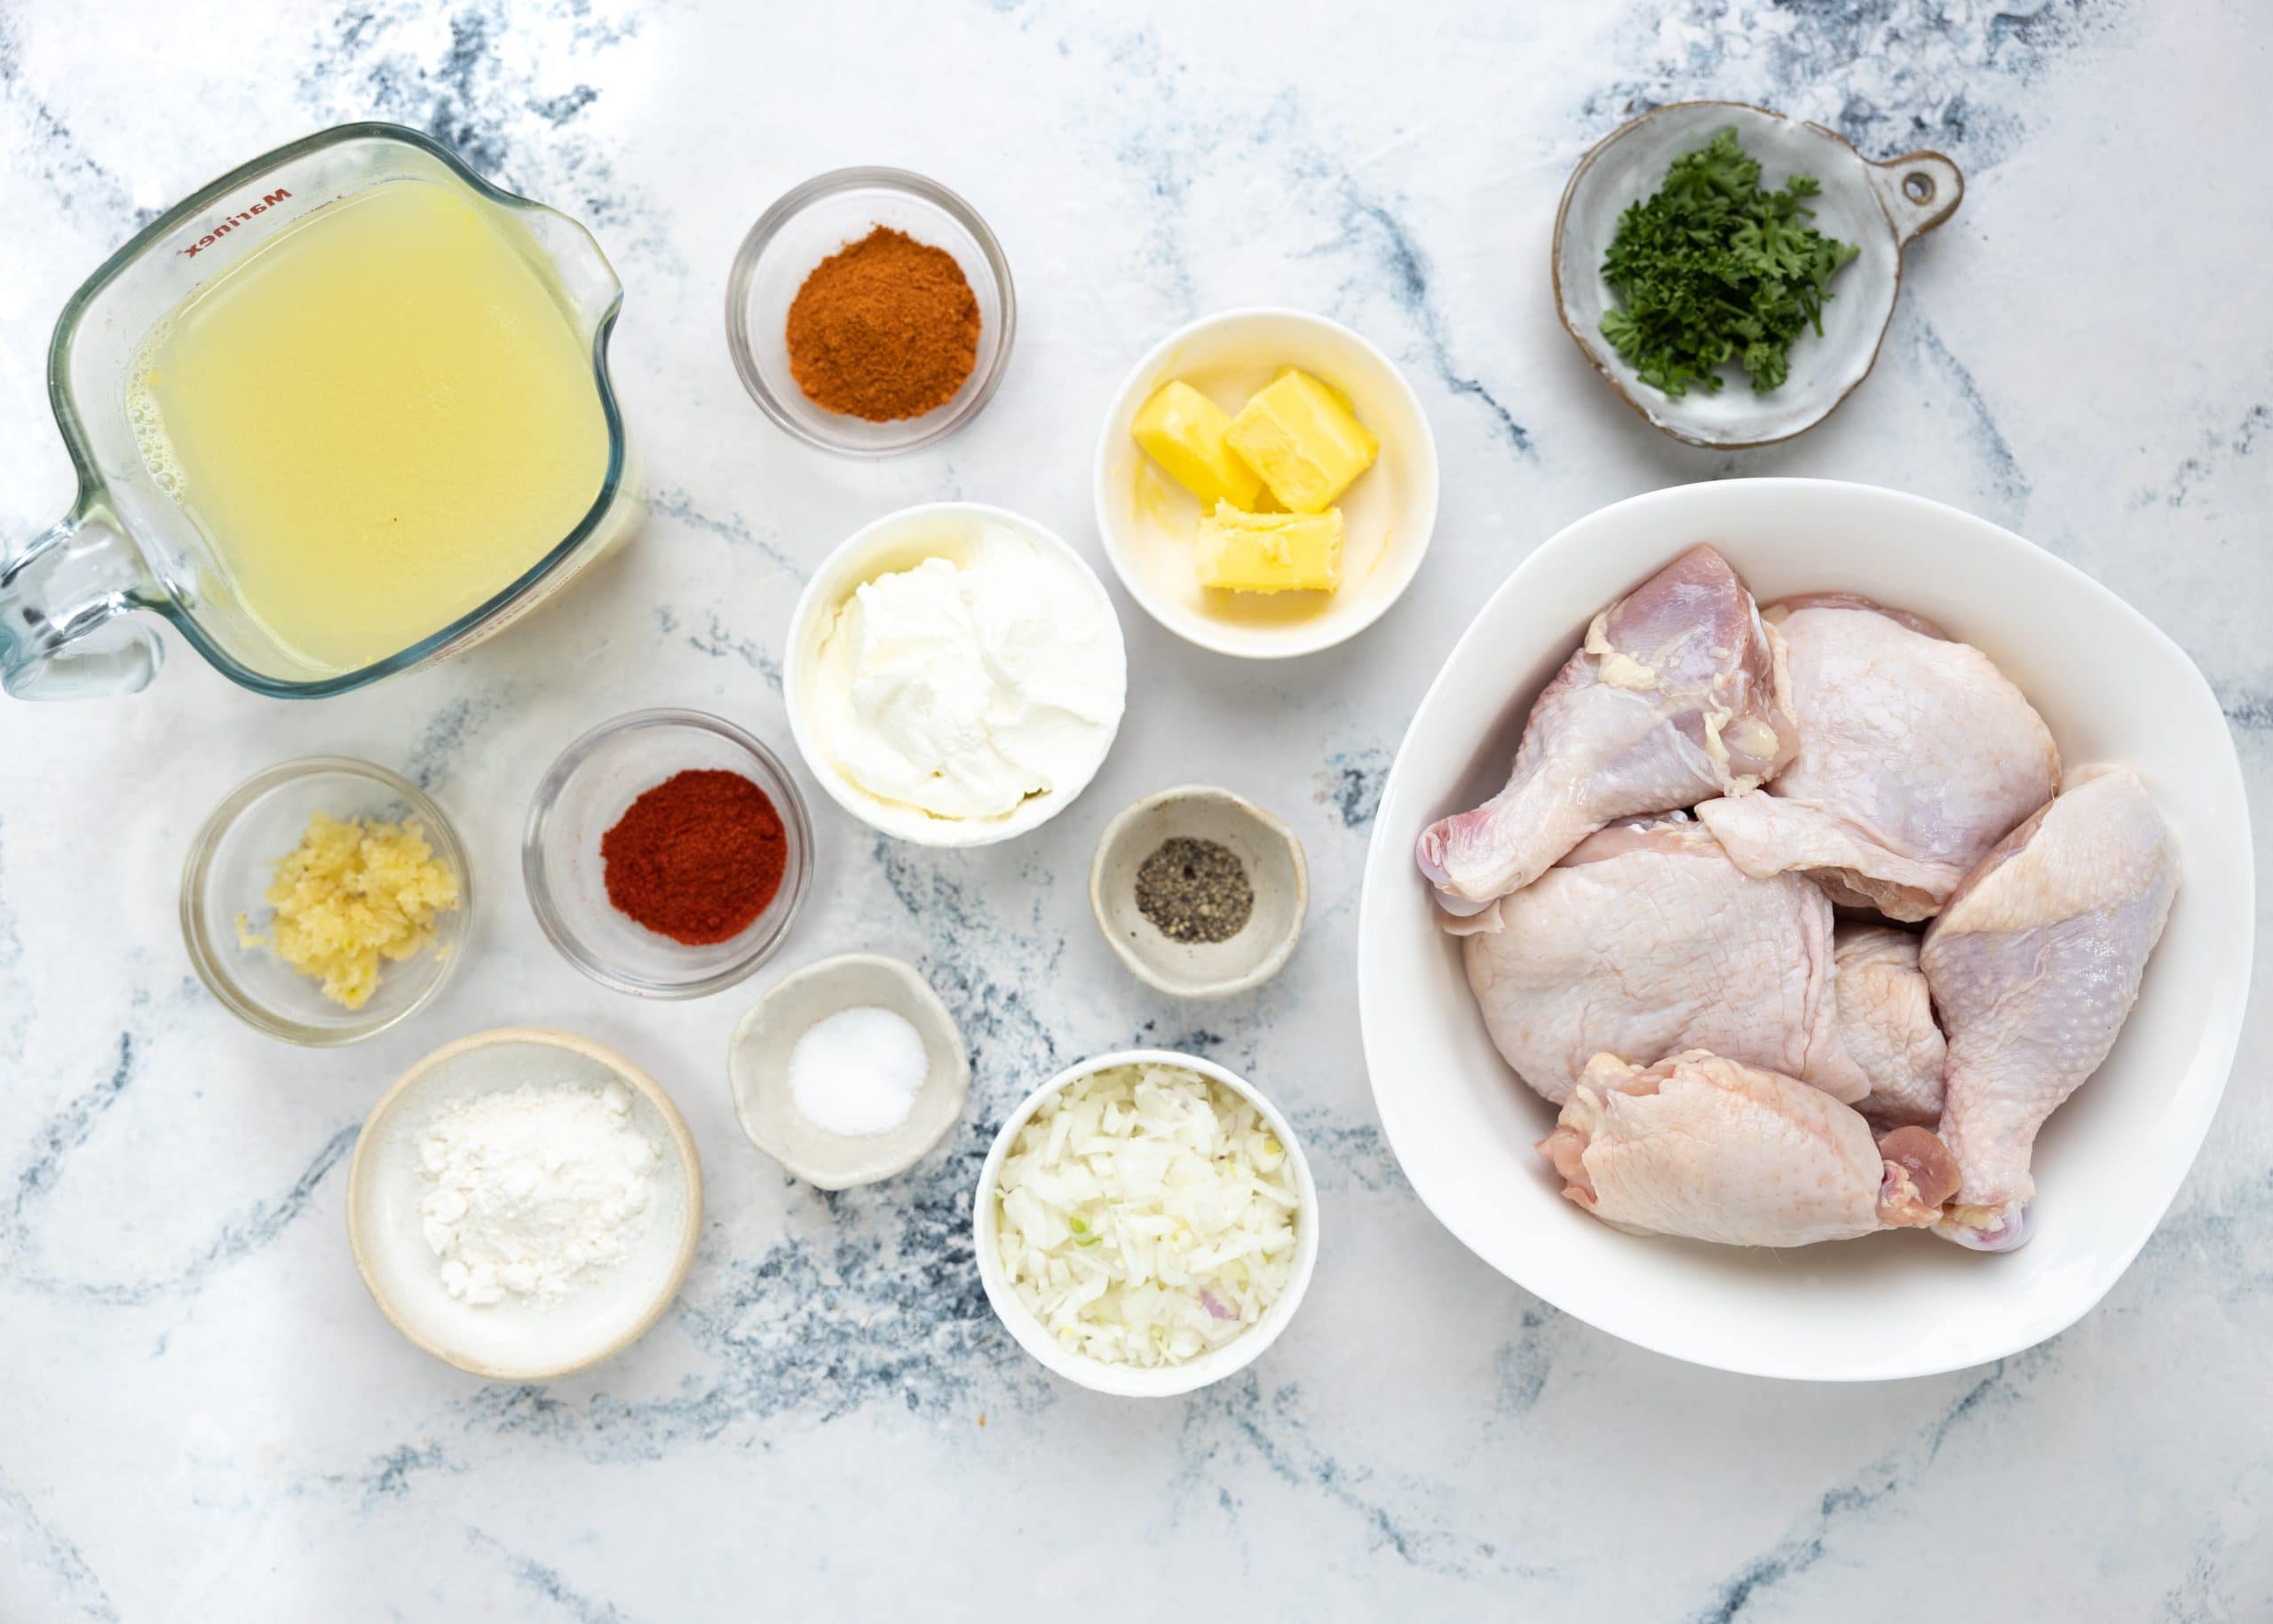 Ingredients for chicken paprikash